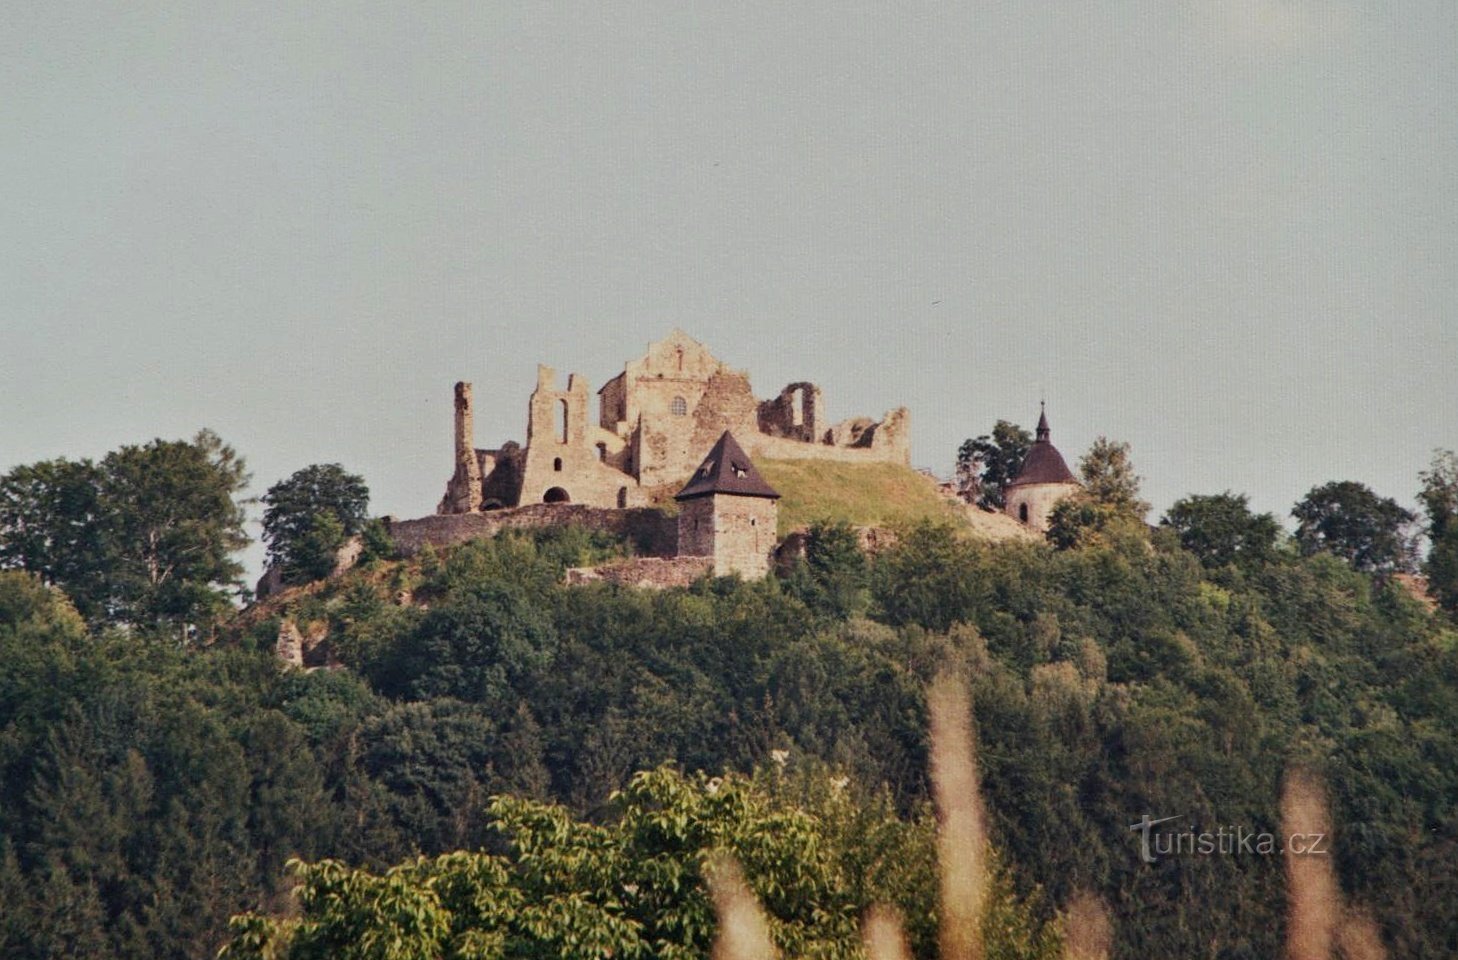 Rovine del castello di Potštejn